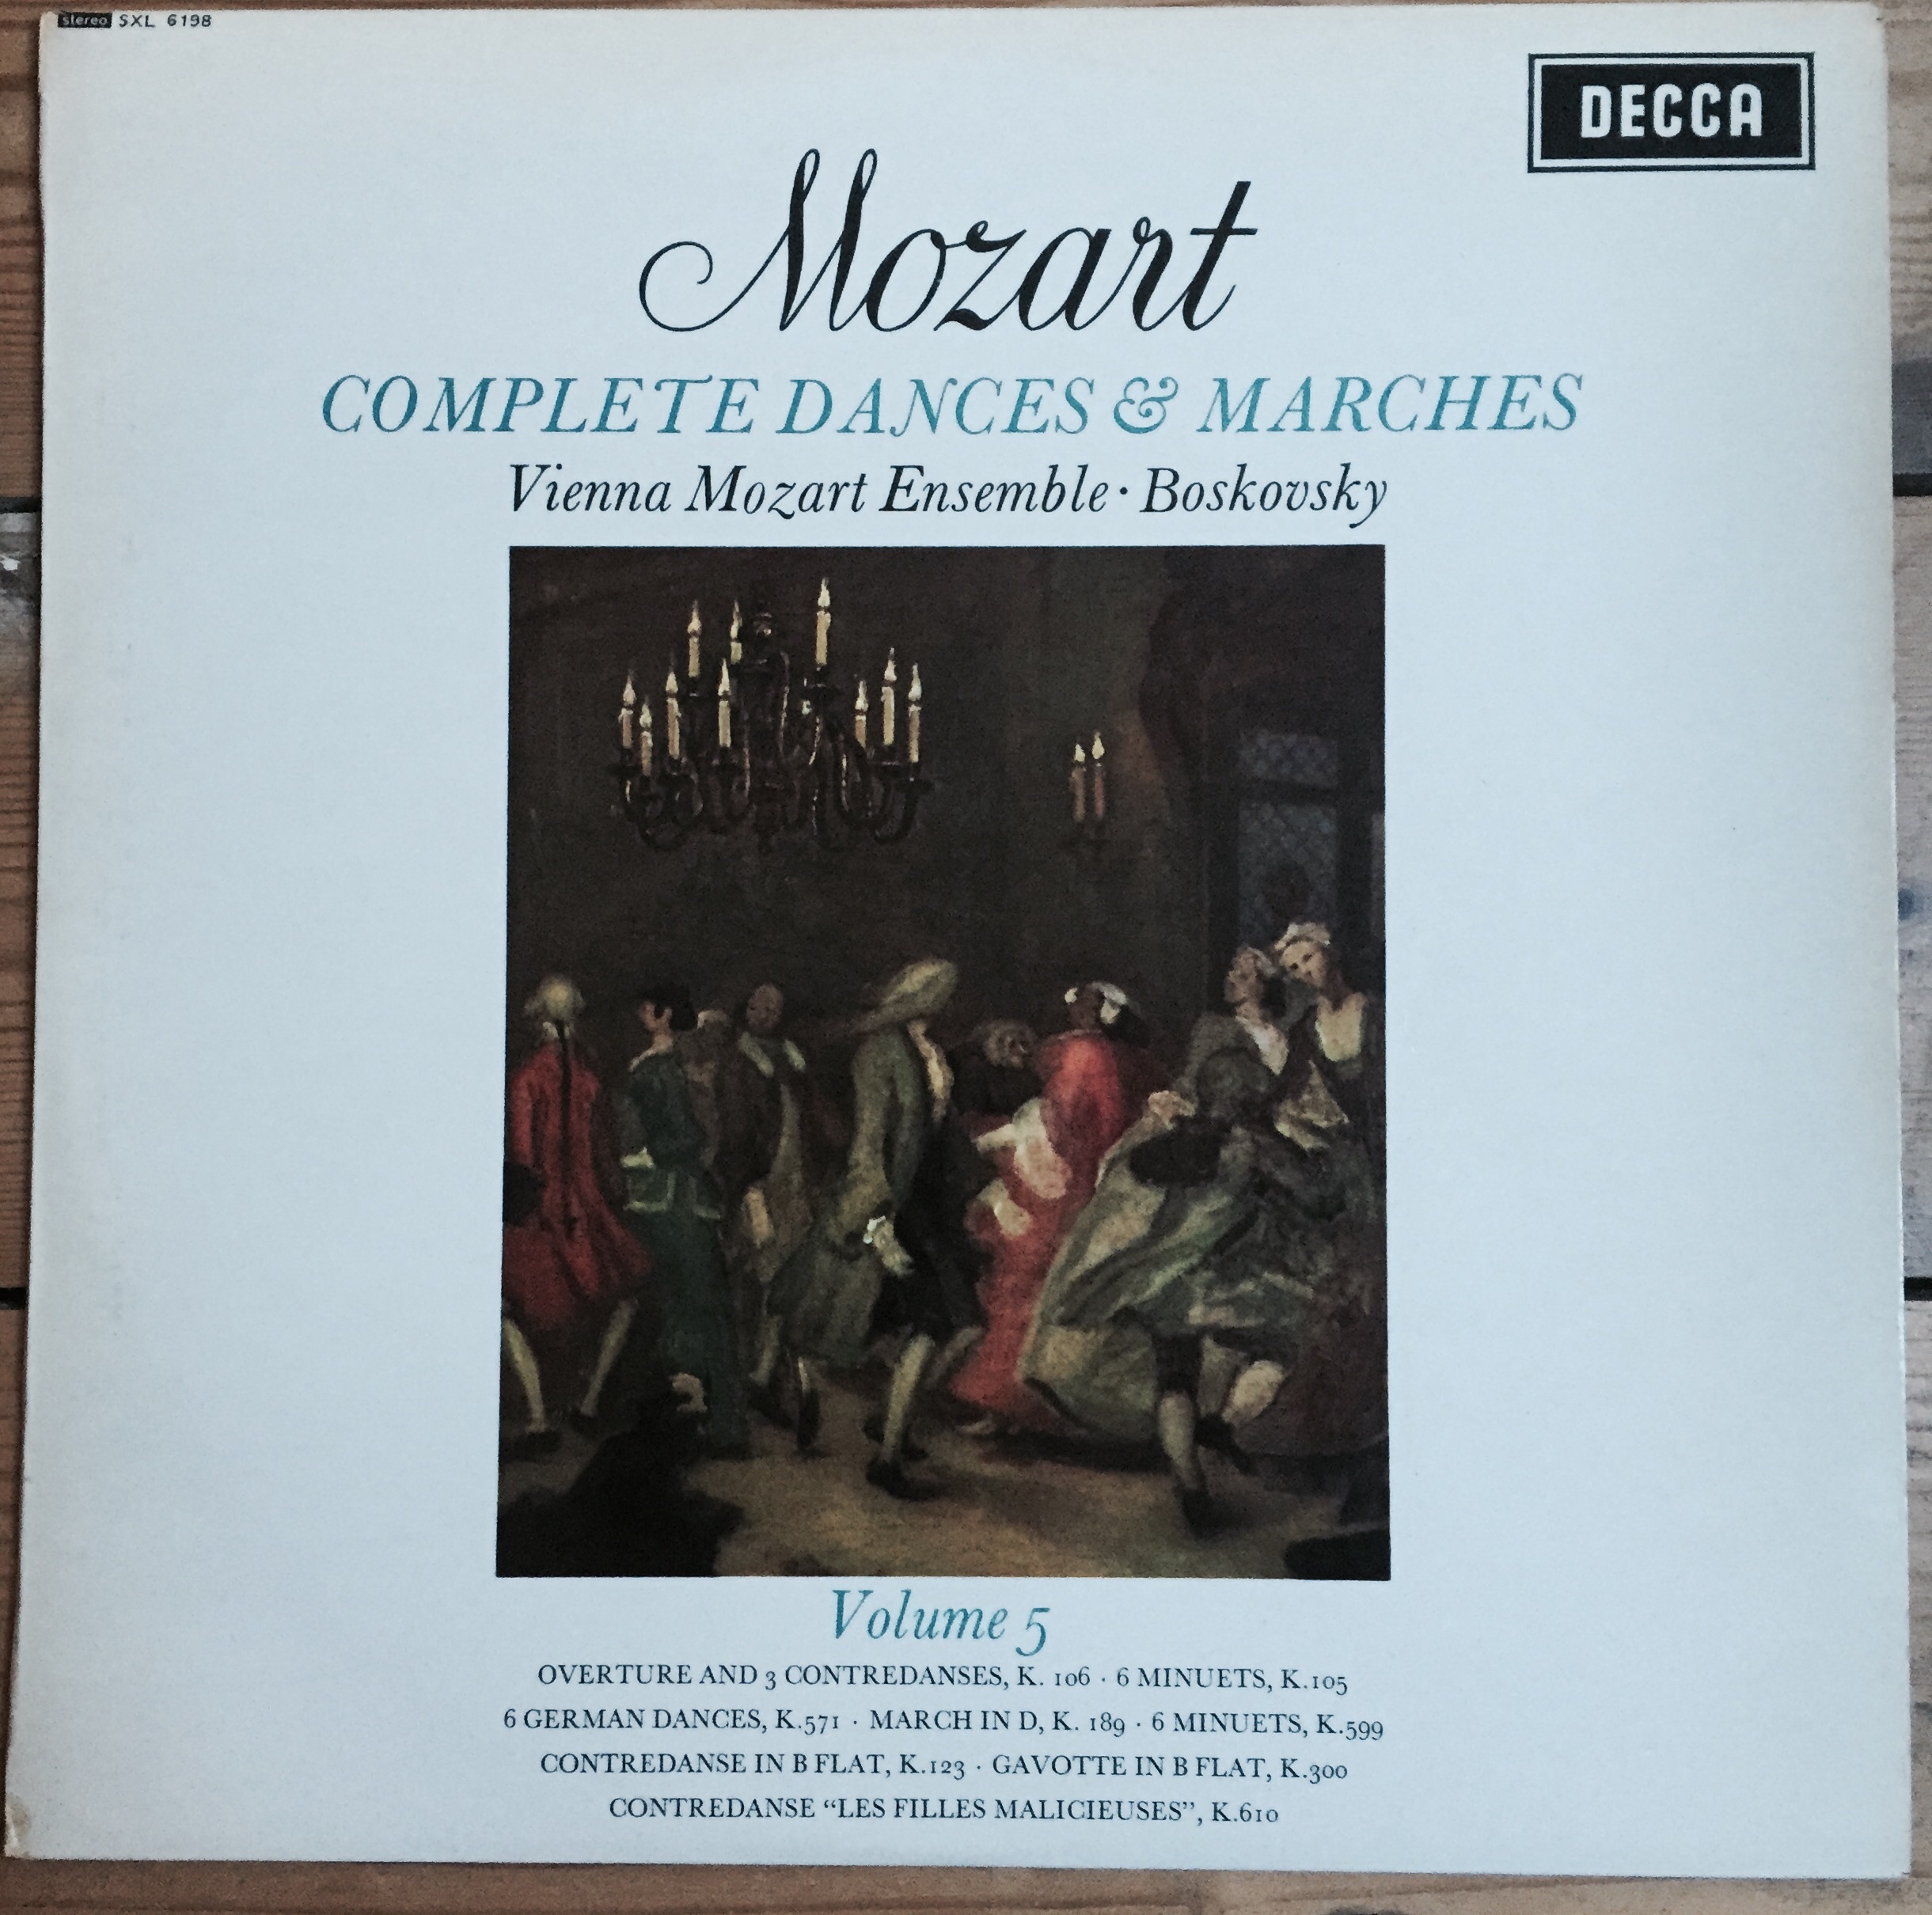 Decca Mozart LP Record vinyl